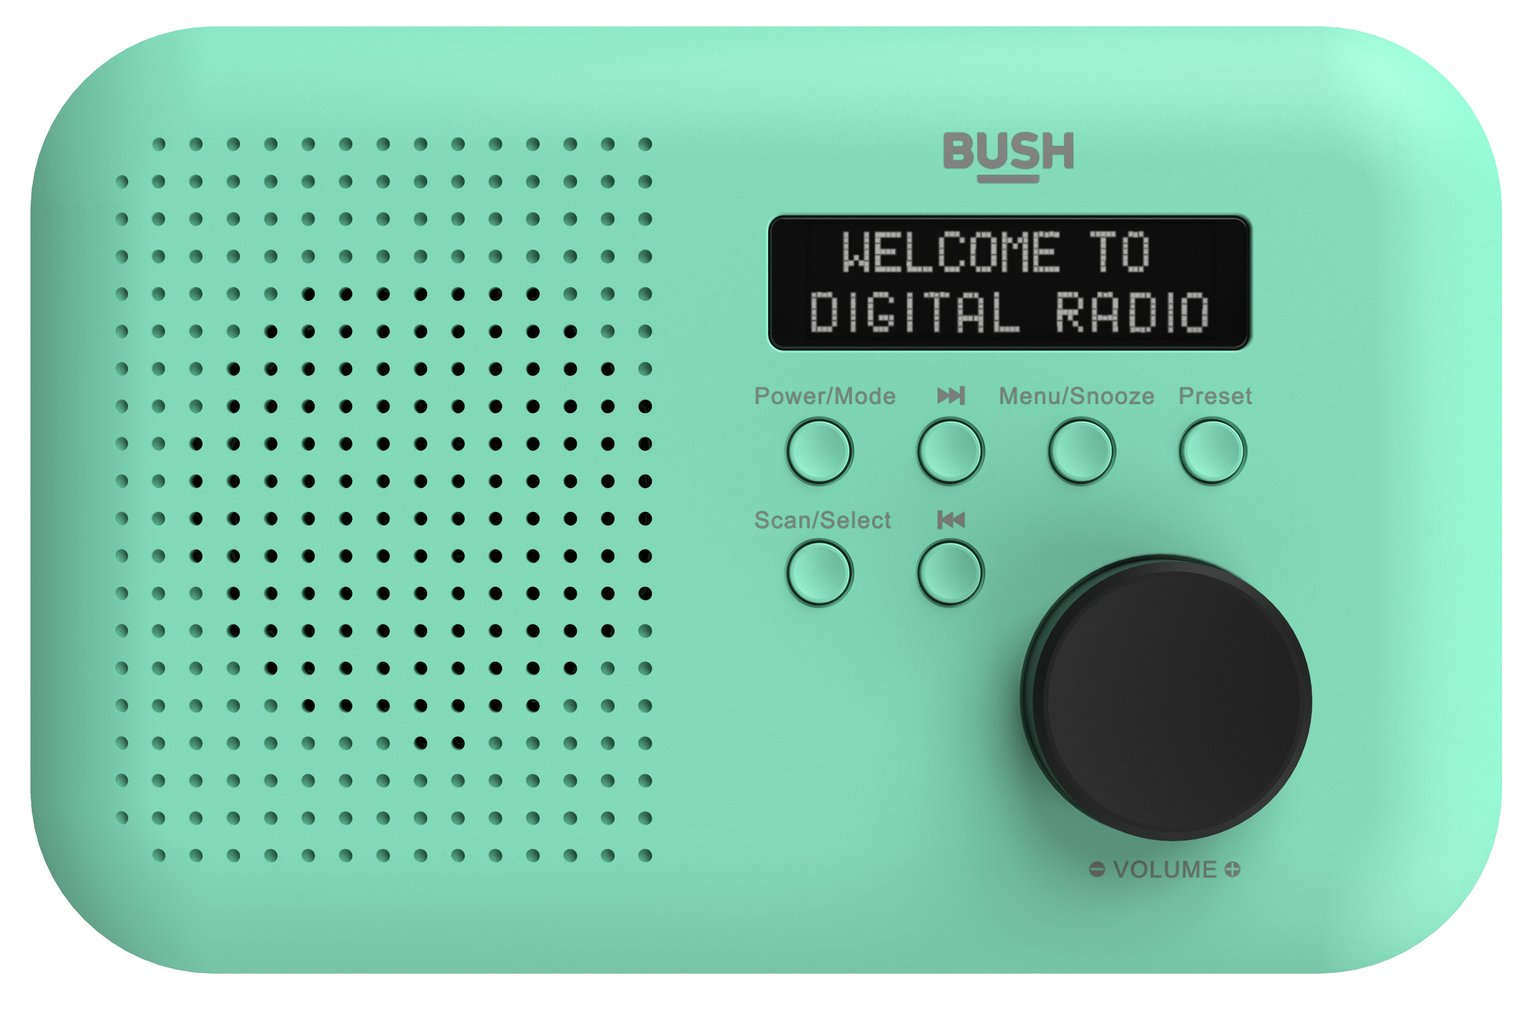 Bush Portable Mono DAB Radio Review